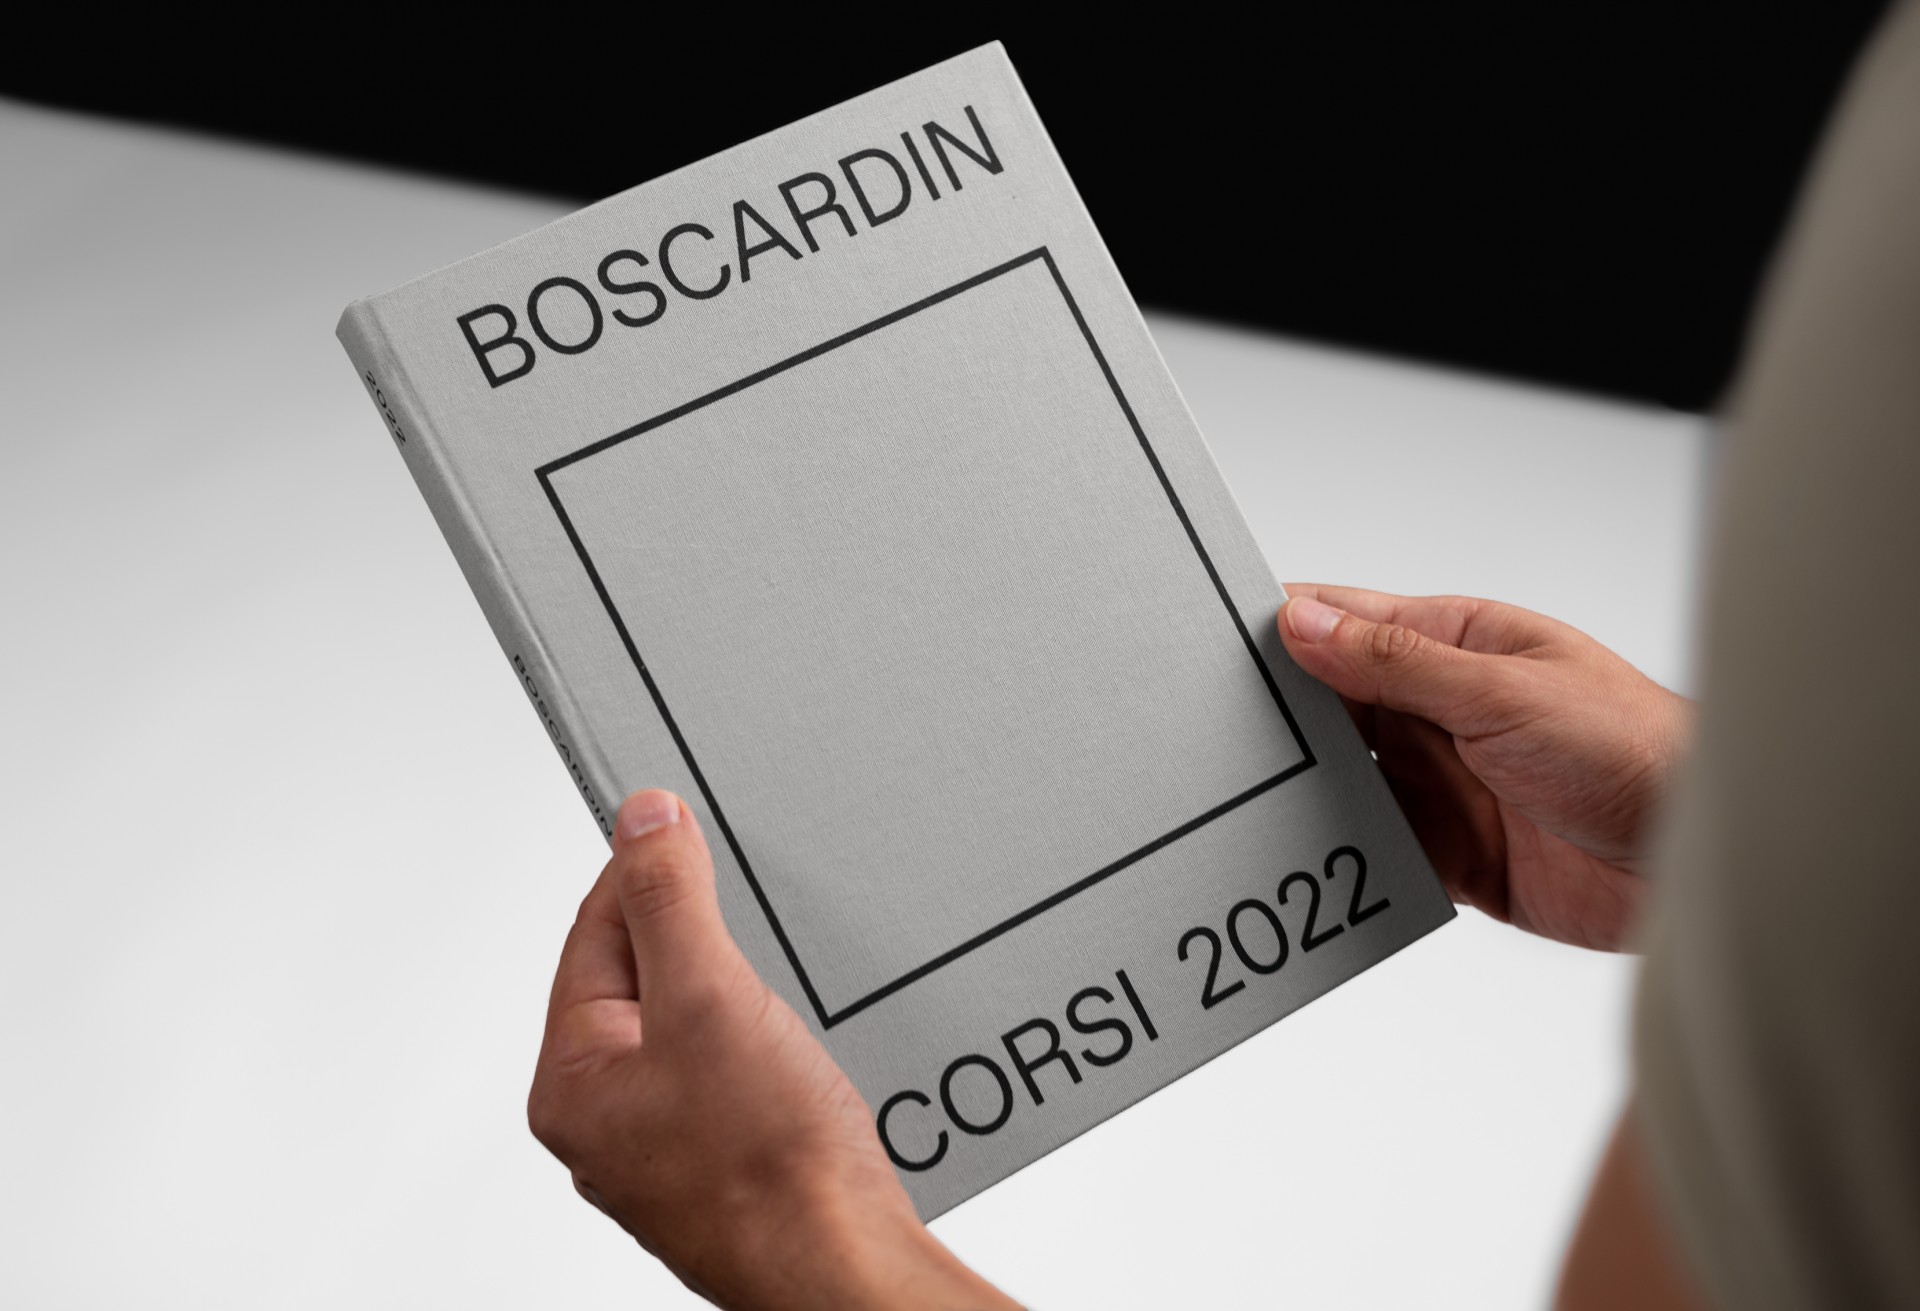 Boscardin Corsi Book